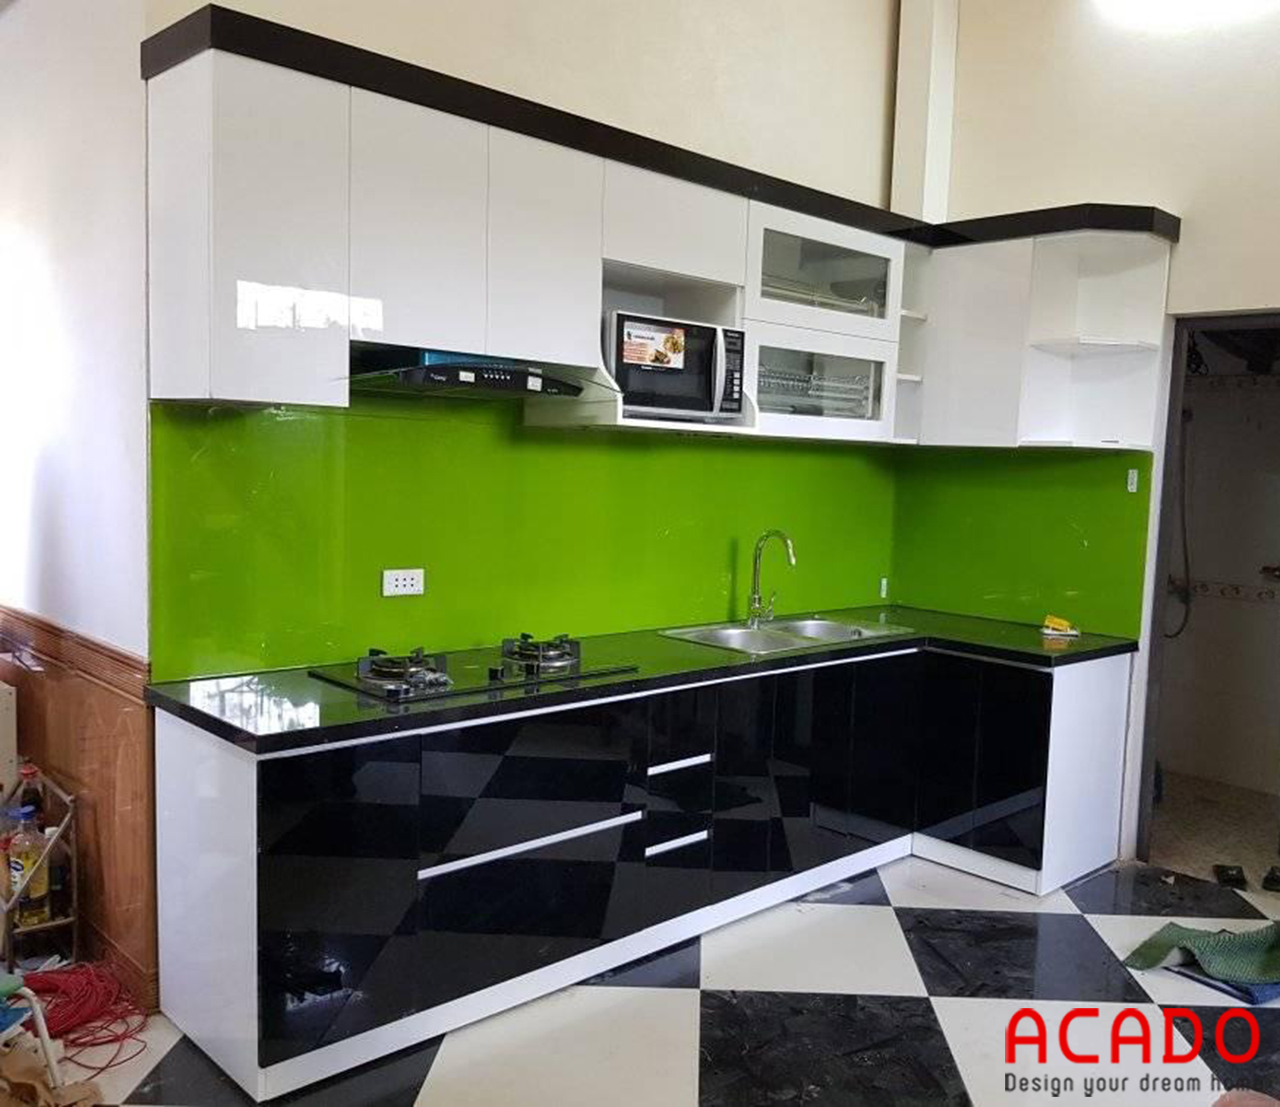 Tủ bếp gỗ công nghiệp sử dụng kính bếp màu xanh lá tạo điểm nhấn cho căn bếp